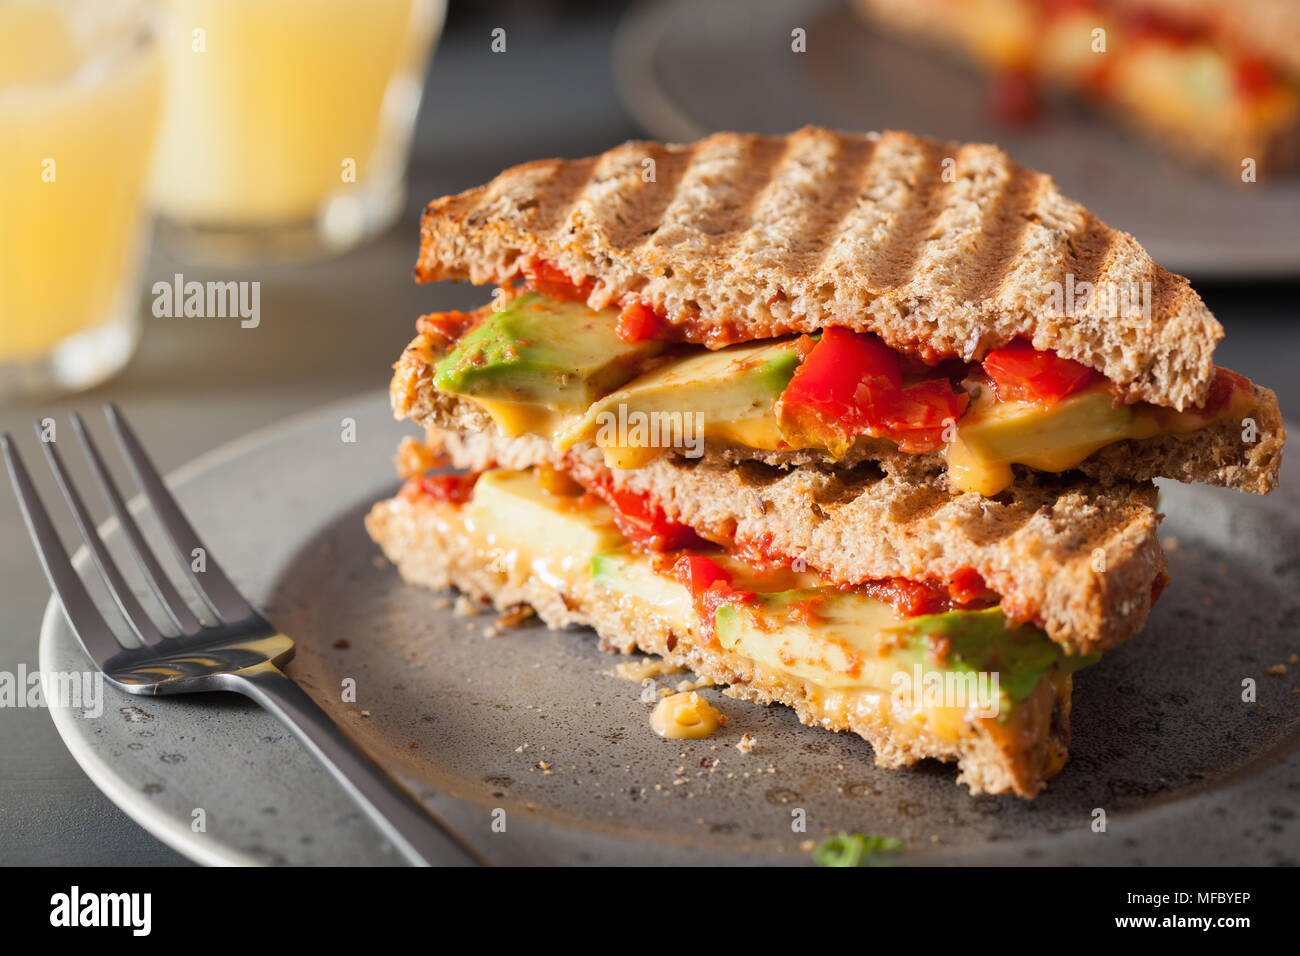 Gegrilltes Käsesandwich mit Avocado und Tomaten Stockfotografie - Alamy